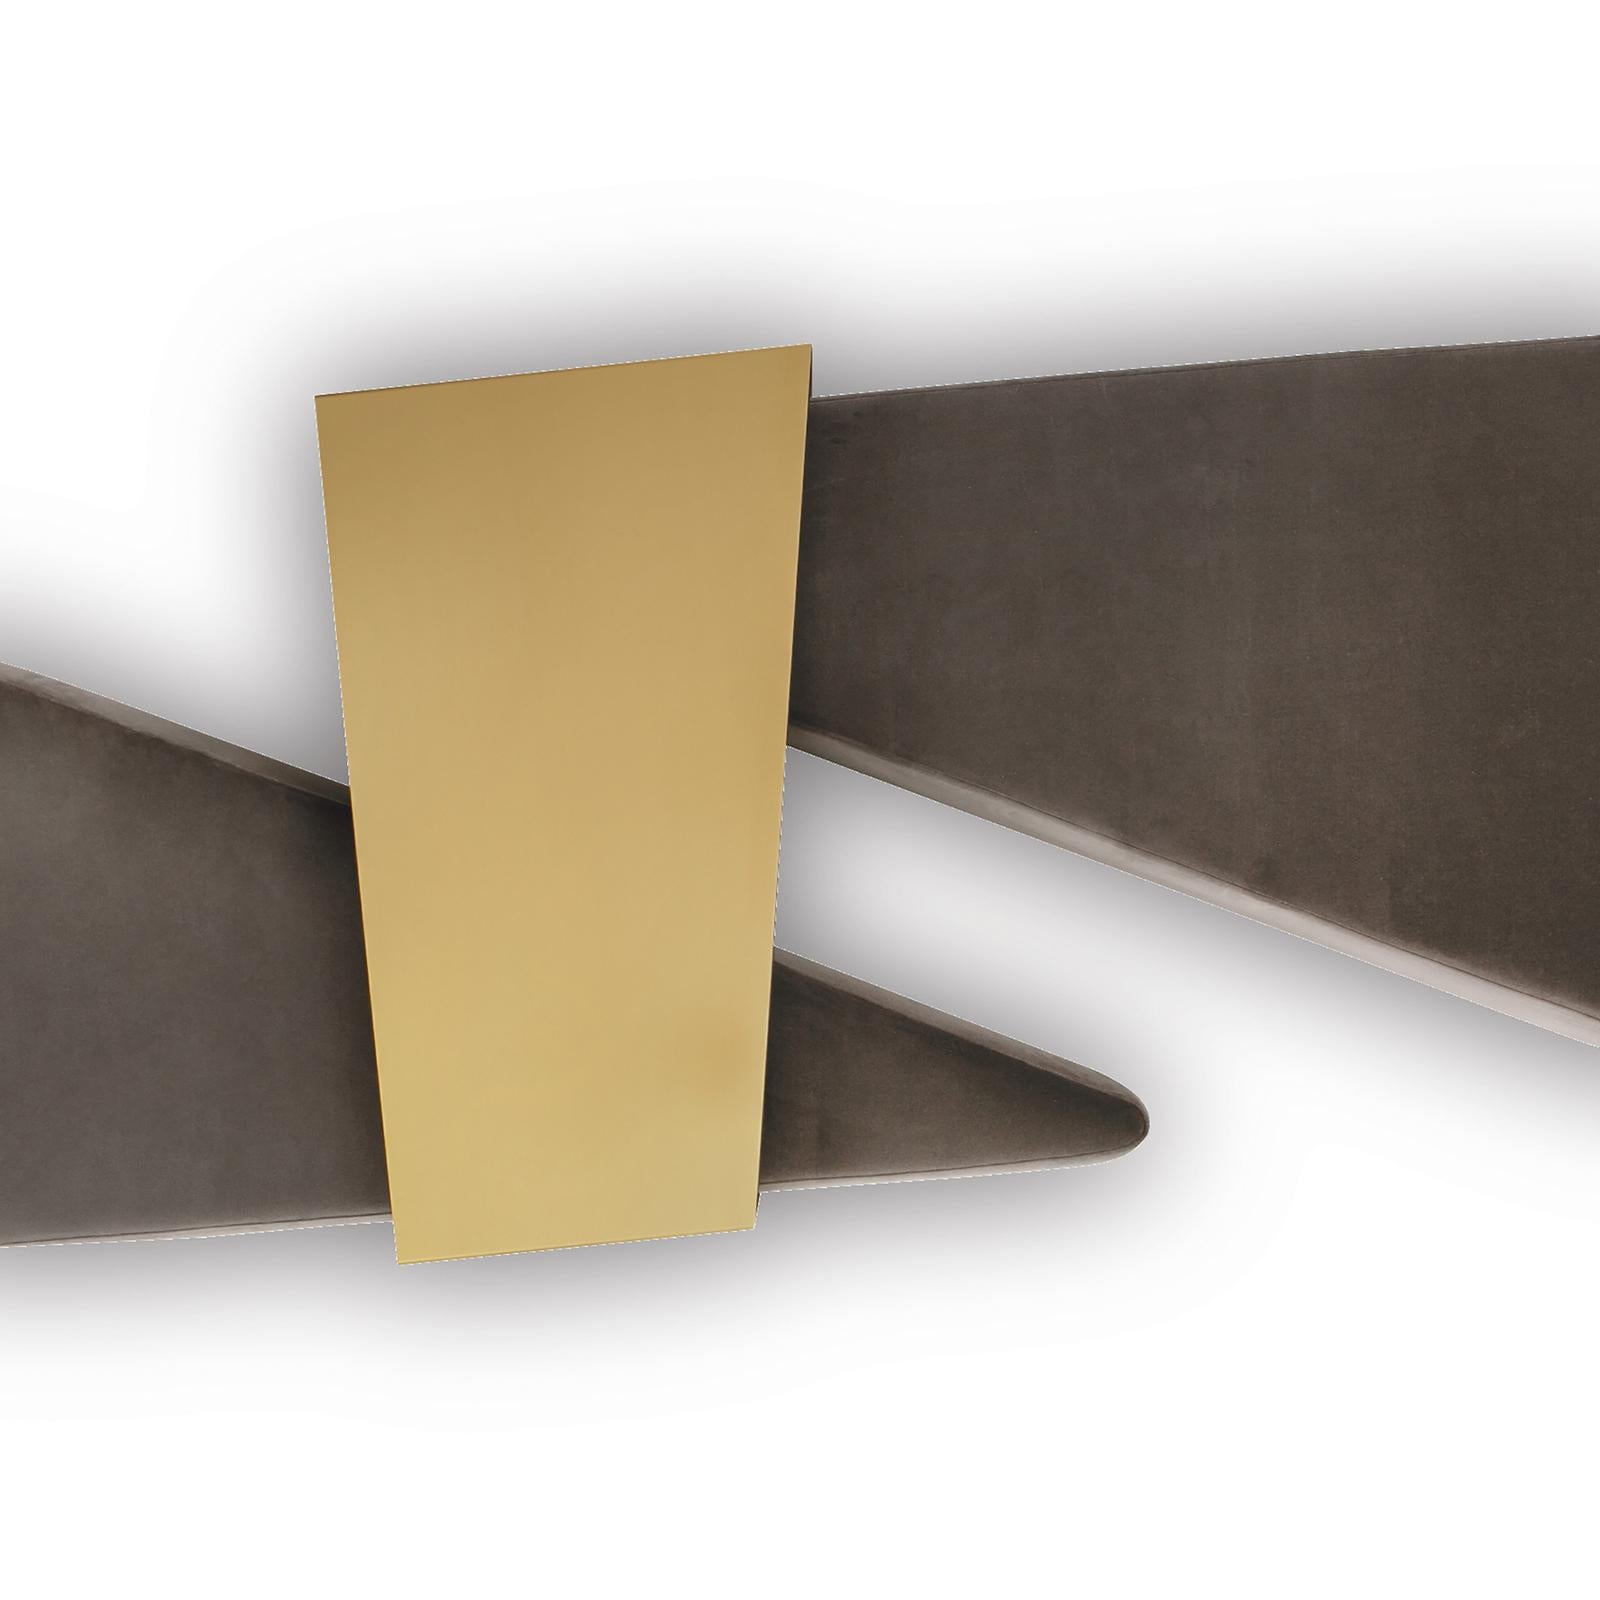 La composition Atollo représente une table basse/pouf avec une structure en contreplaqué paddée avec du caoutchouc multi-densité. Original et élégant, il se compose de 2 sections (triangles), 1 avec une capote rigide et 1 avec une capote souple. Les